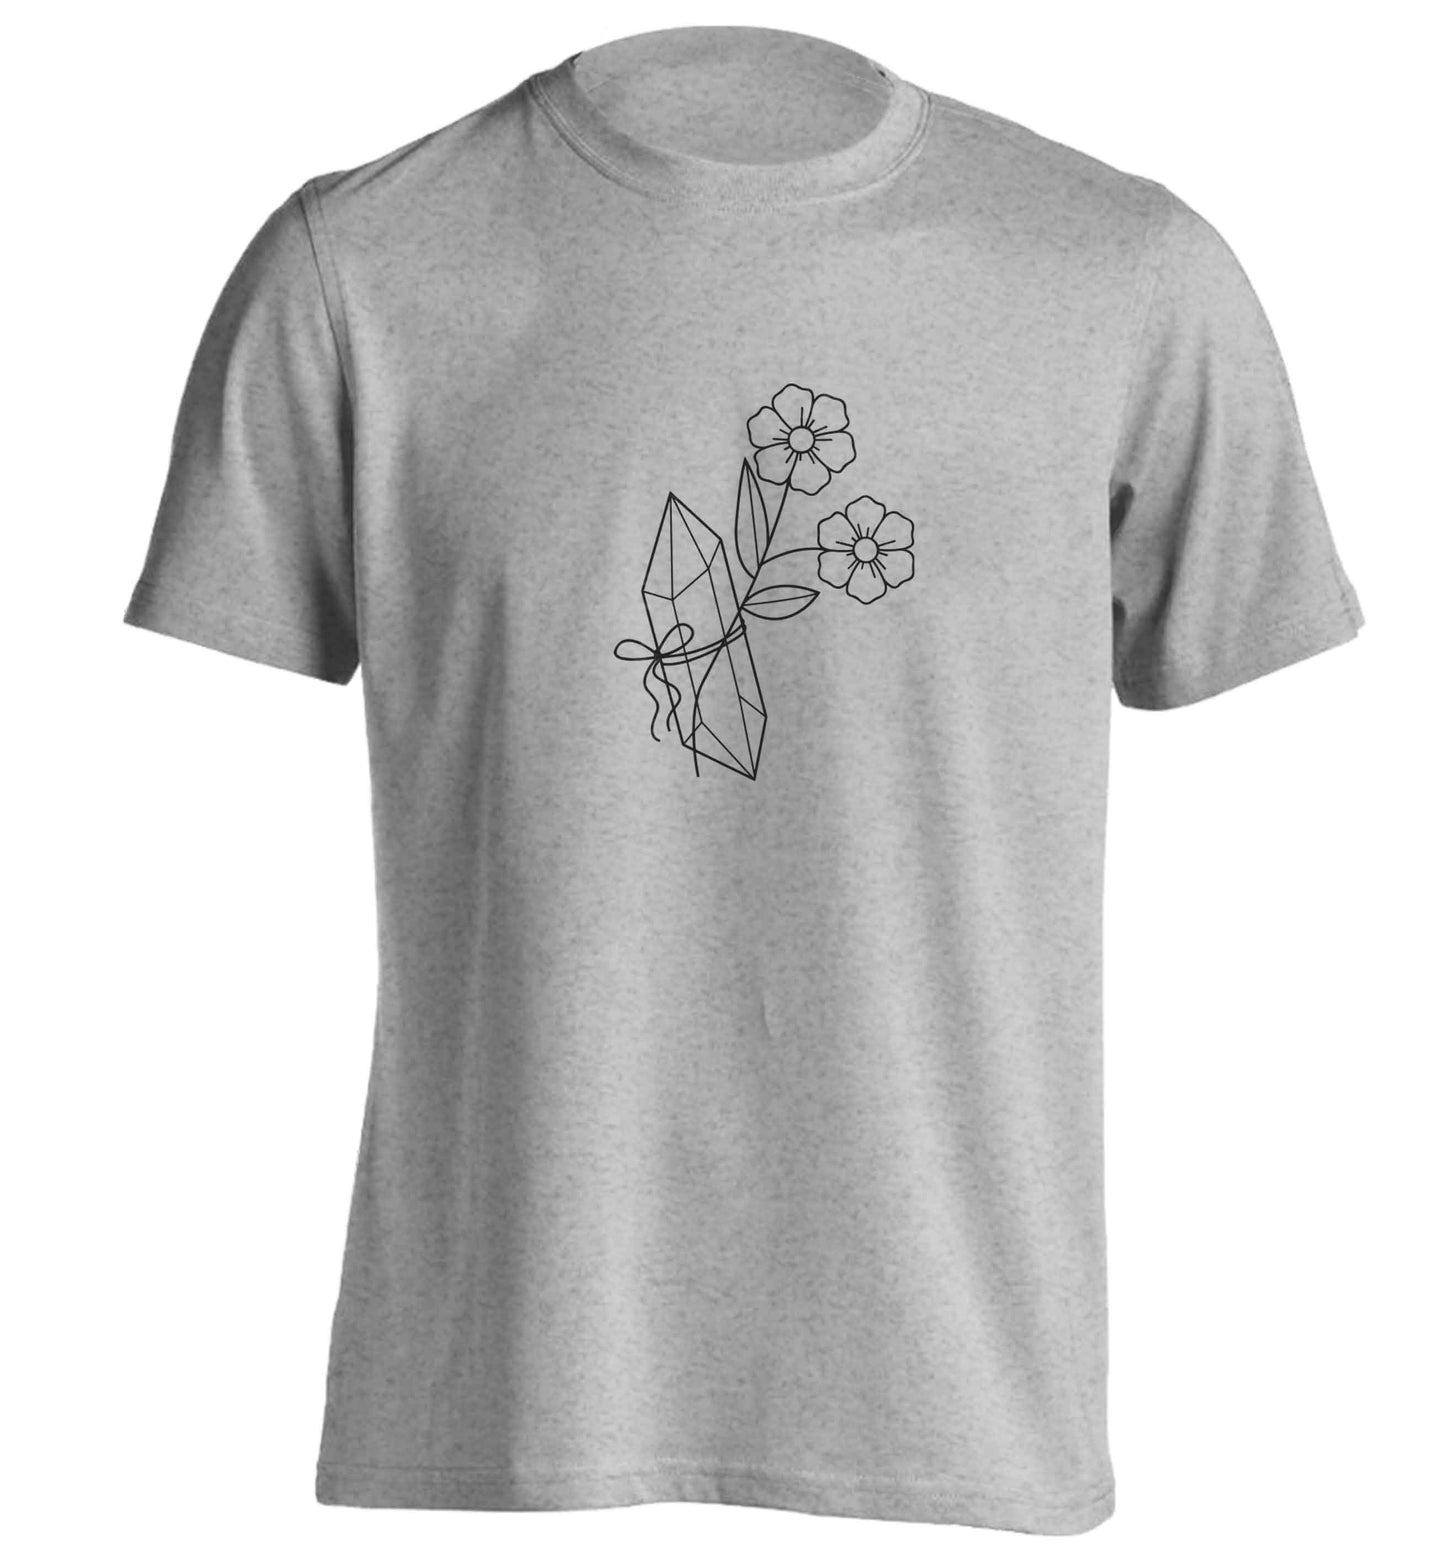 Crystal flower illustration adults unisex grey Tshirt 2XL